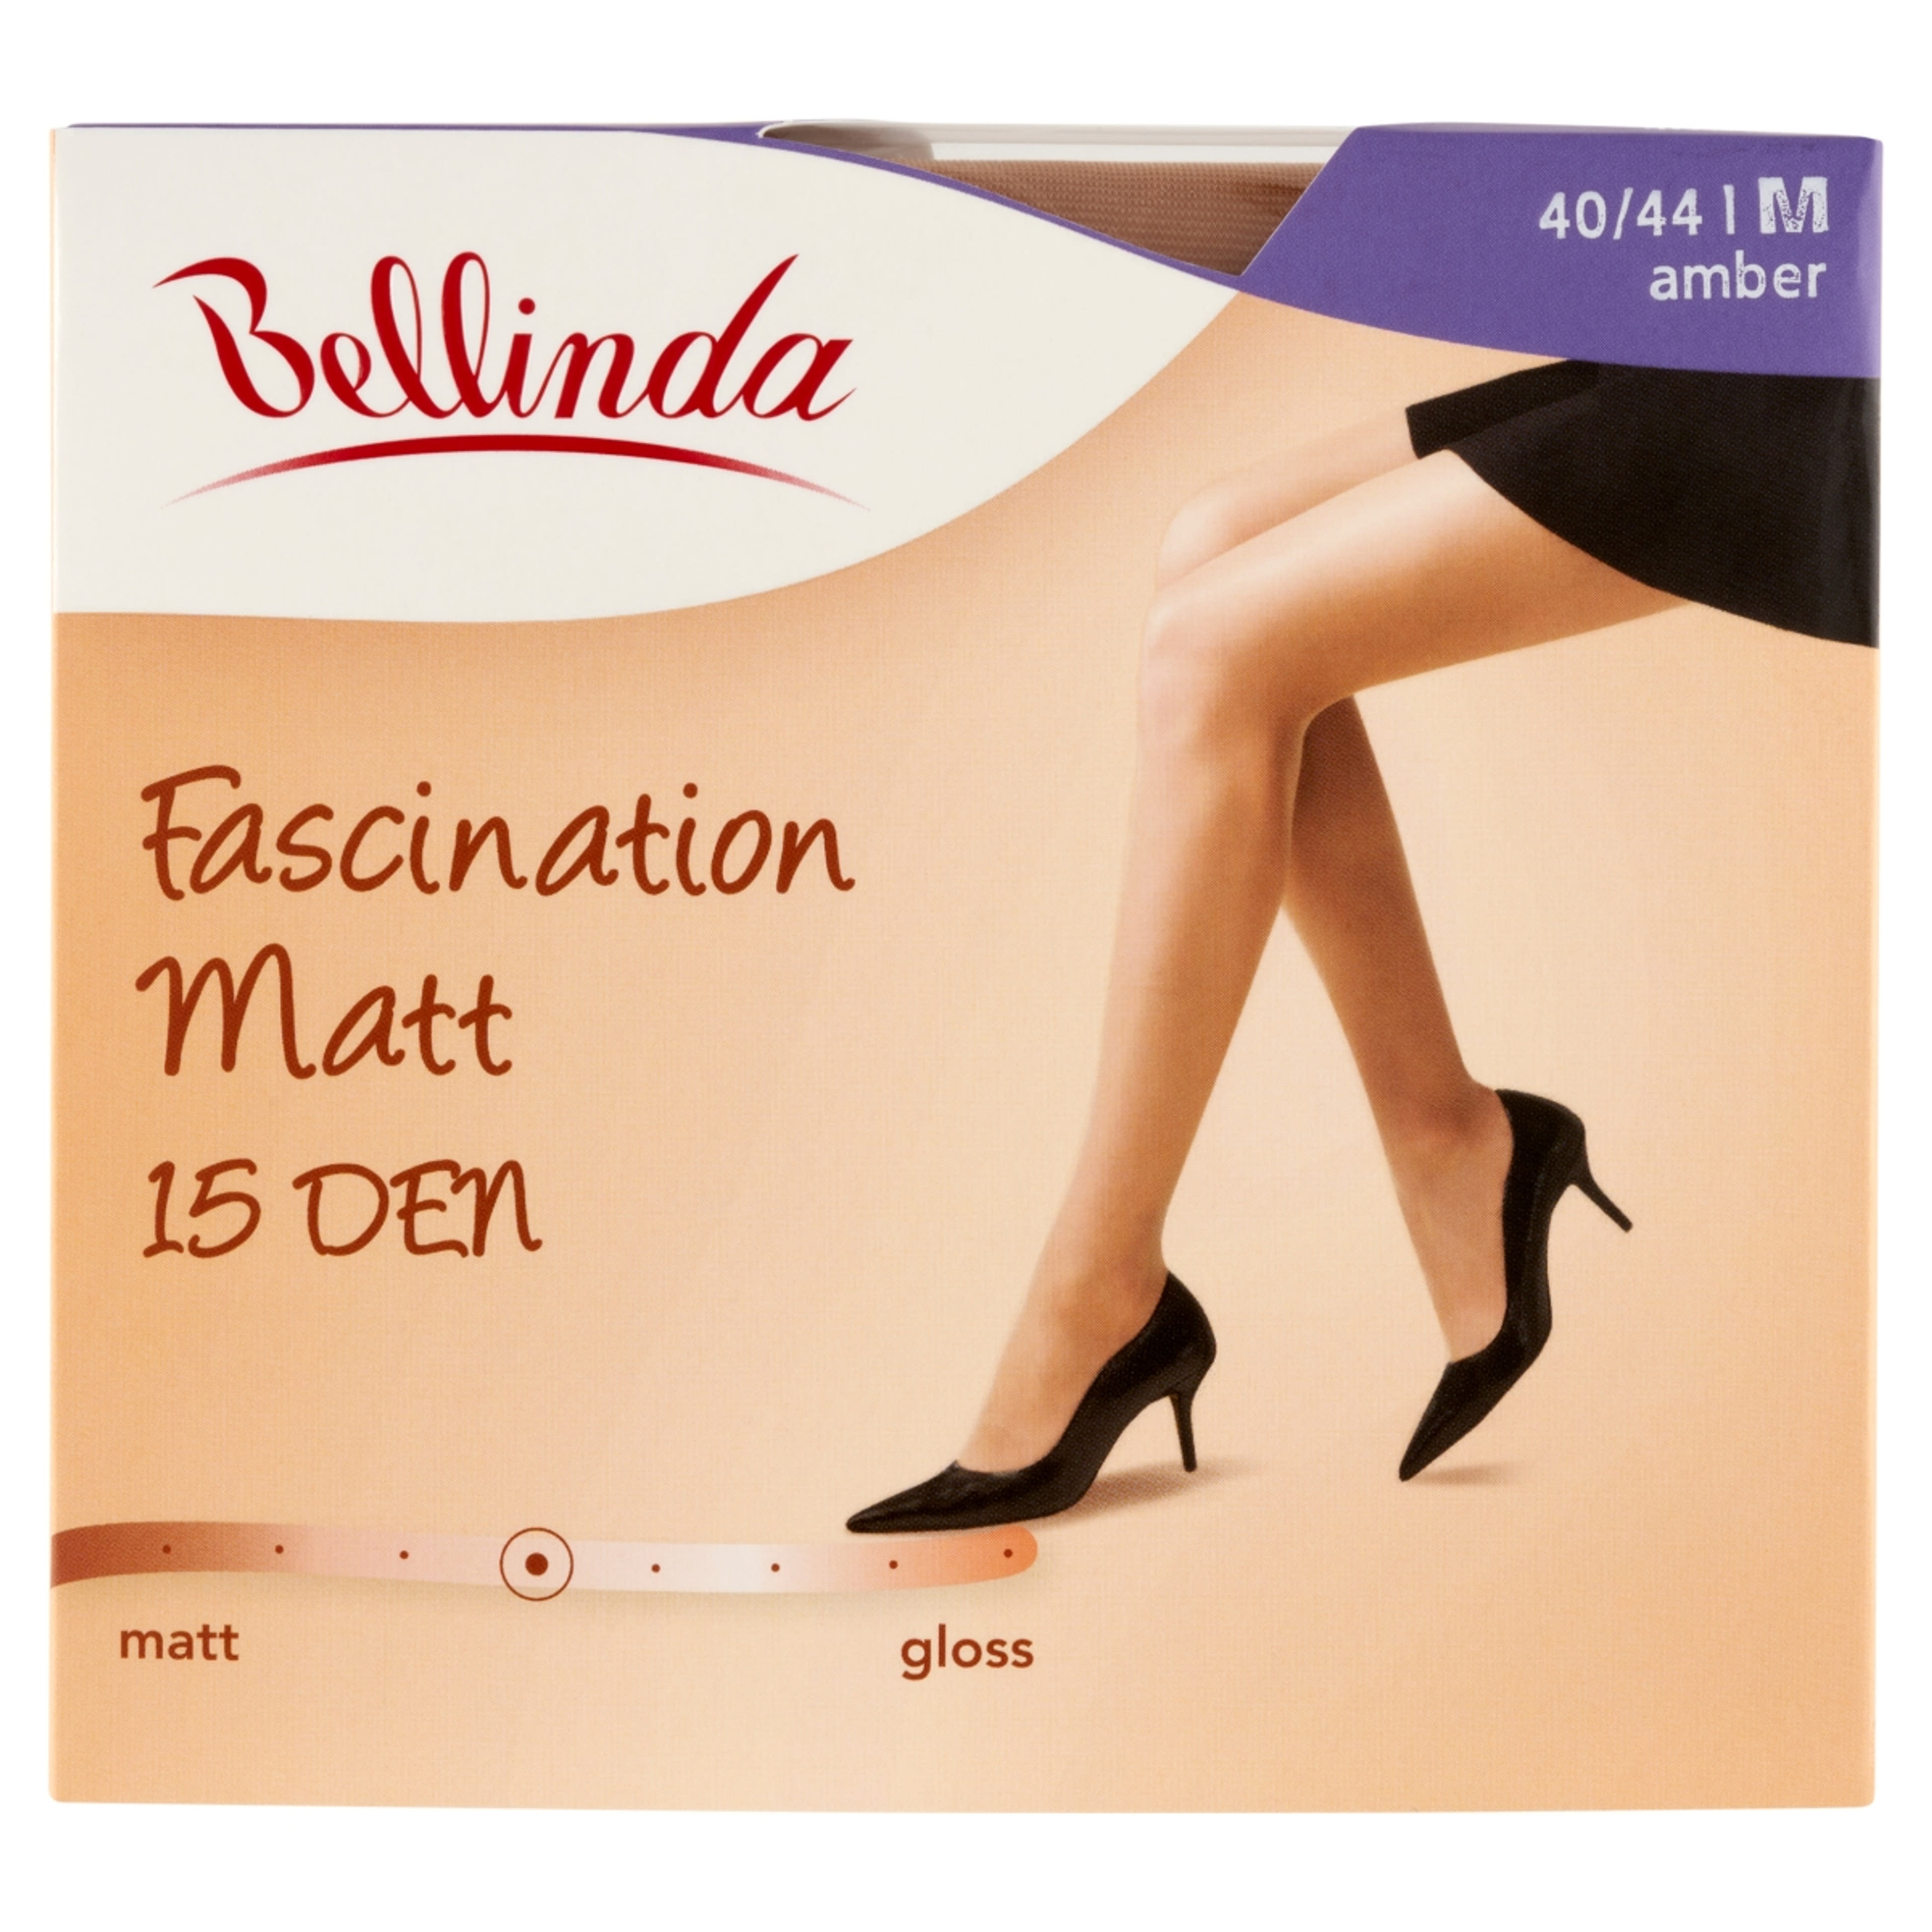 Bellinda Fascination Matt 15 Den Amber M Harisnya - 1 db-1